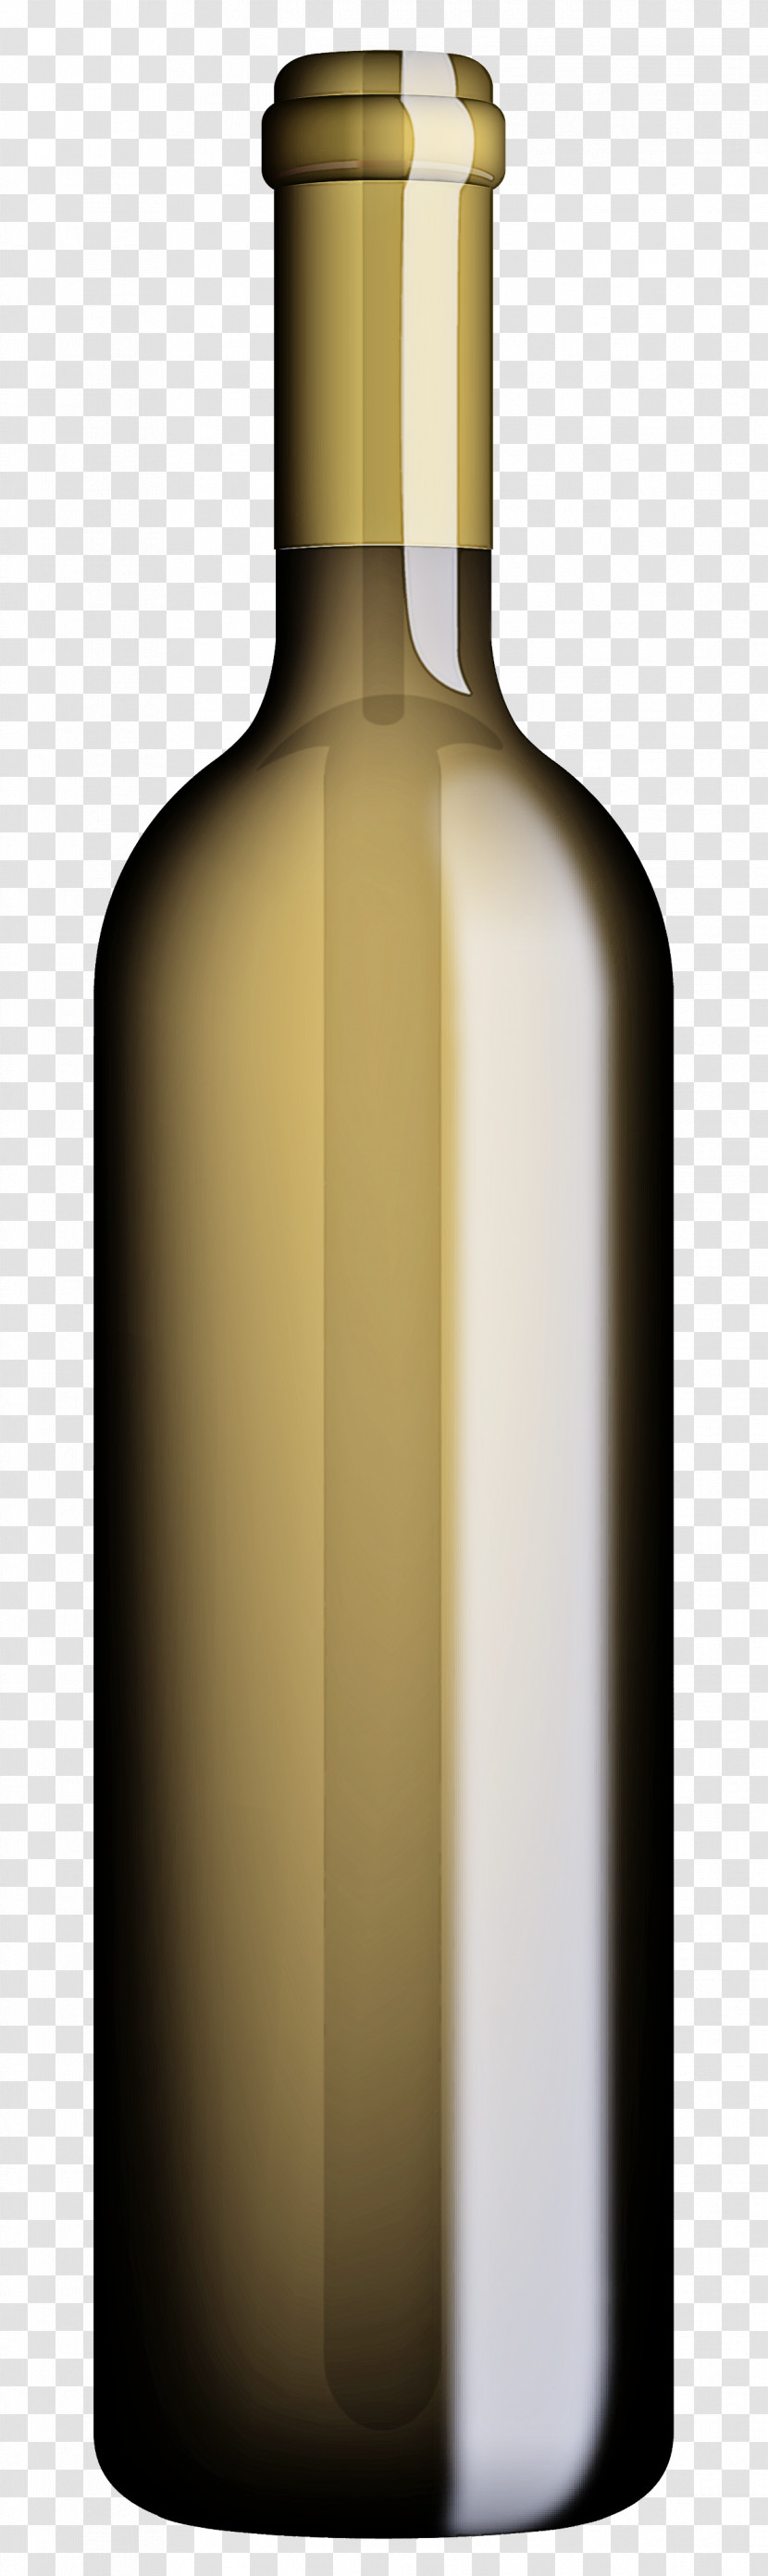 Bottle Glass Bottle Liqueur Drink Wine Bottle Transparent PNG